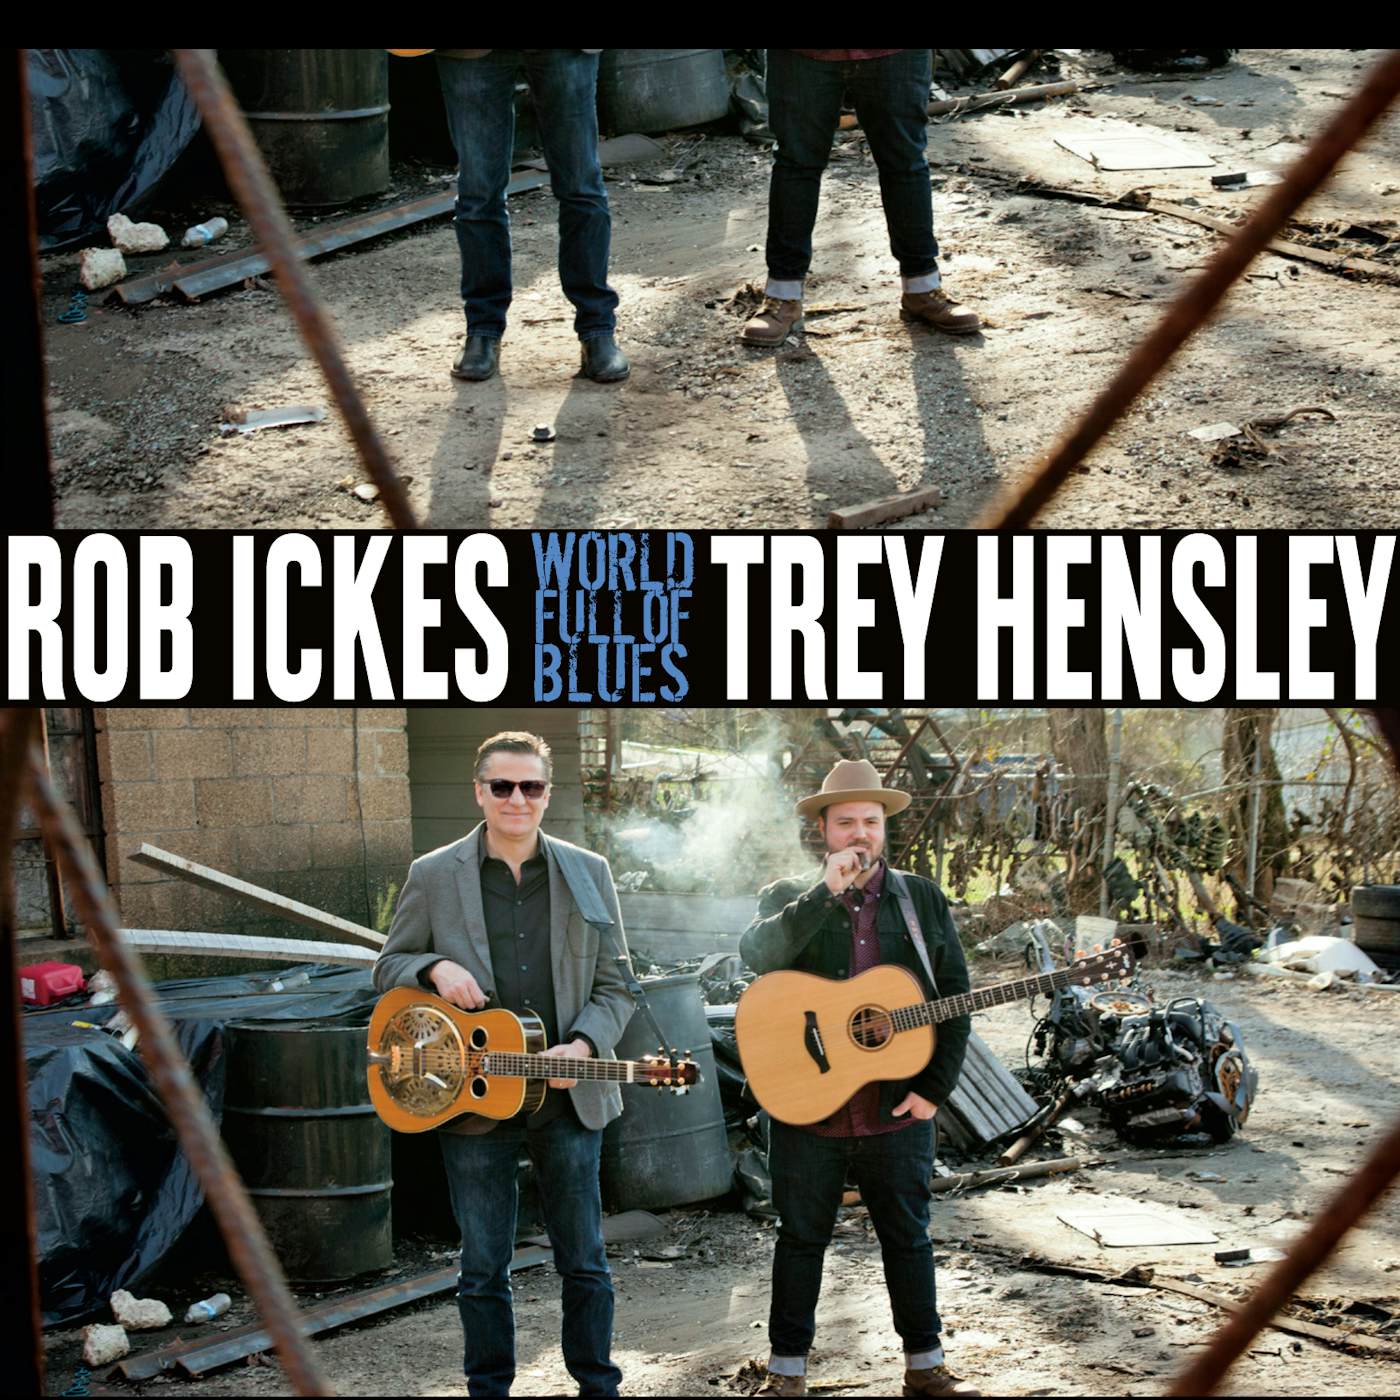 Rob Ickes & Trey Hensley World Full of Blues Vinyl Record